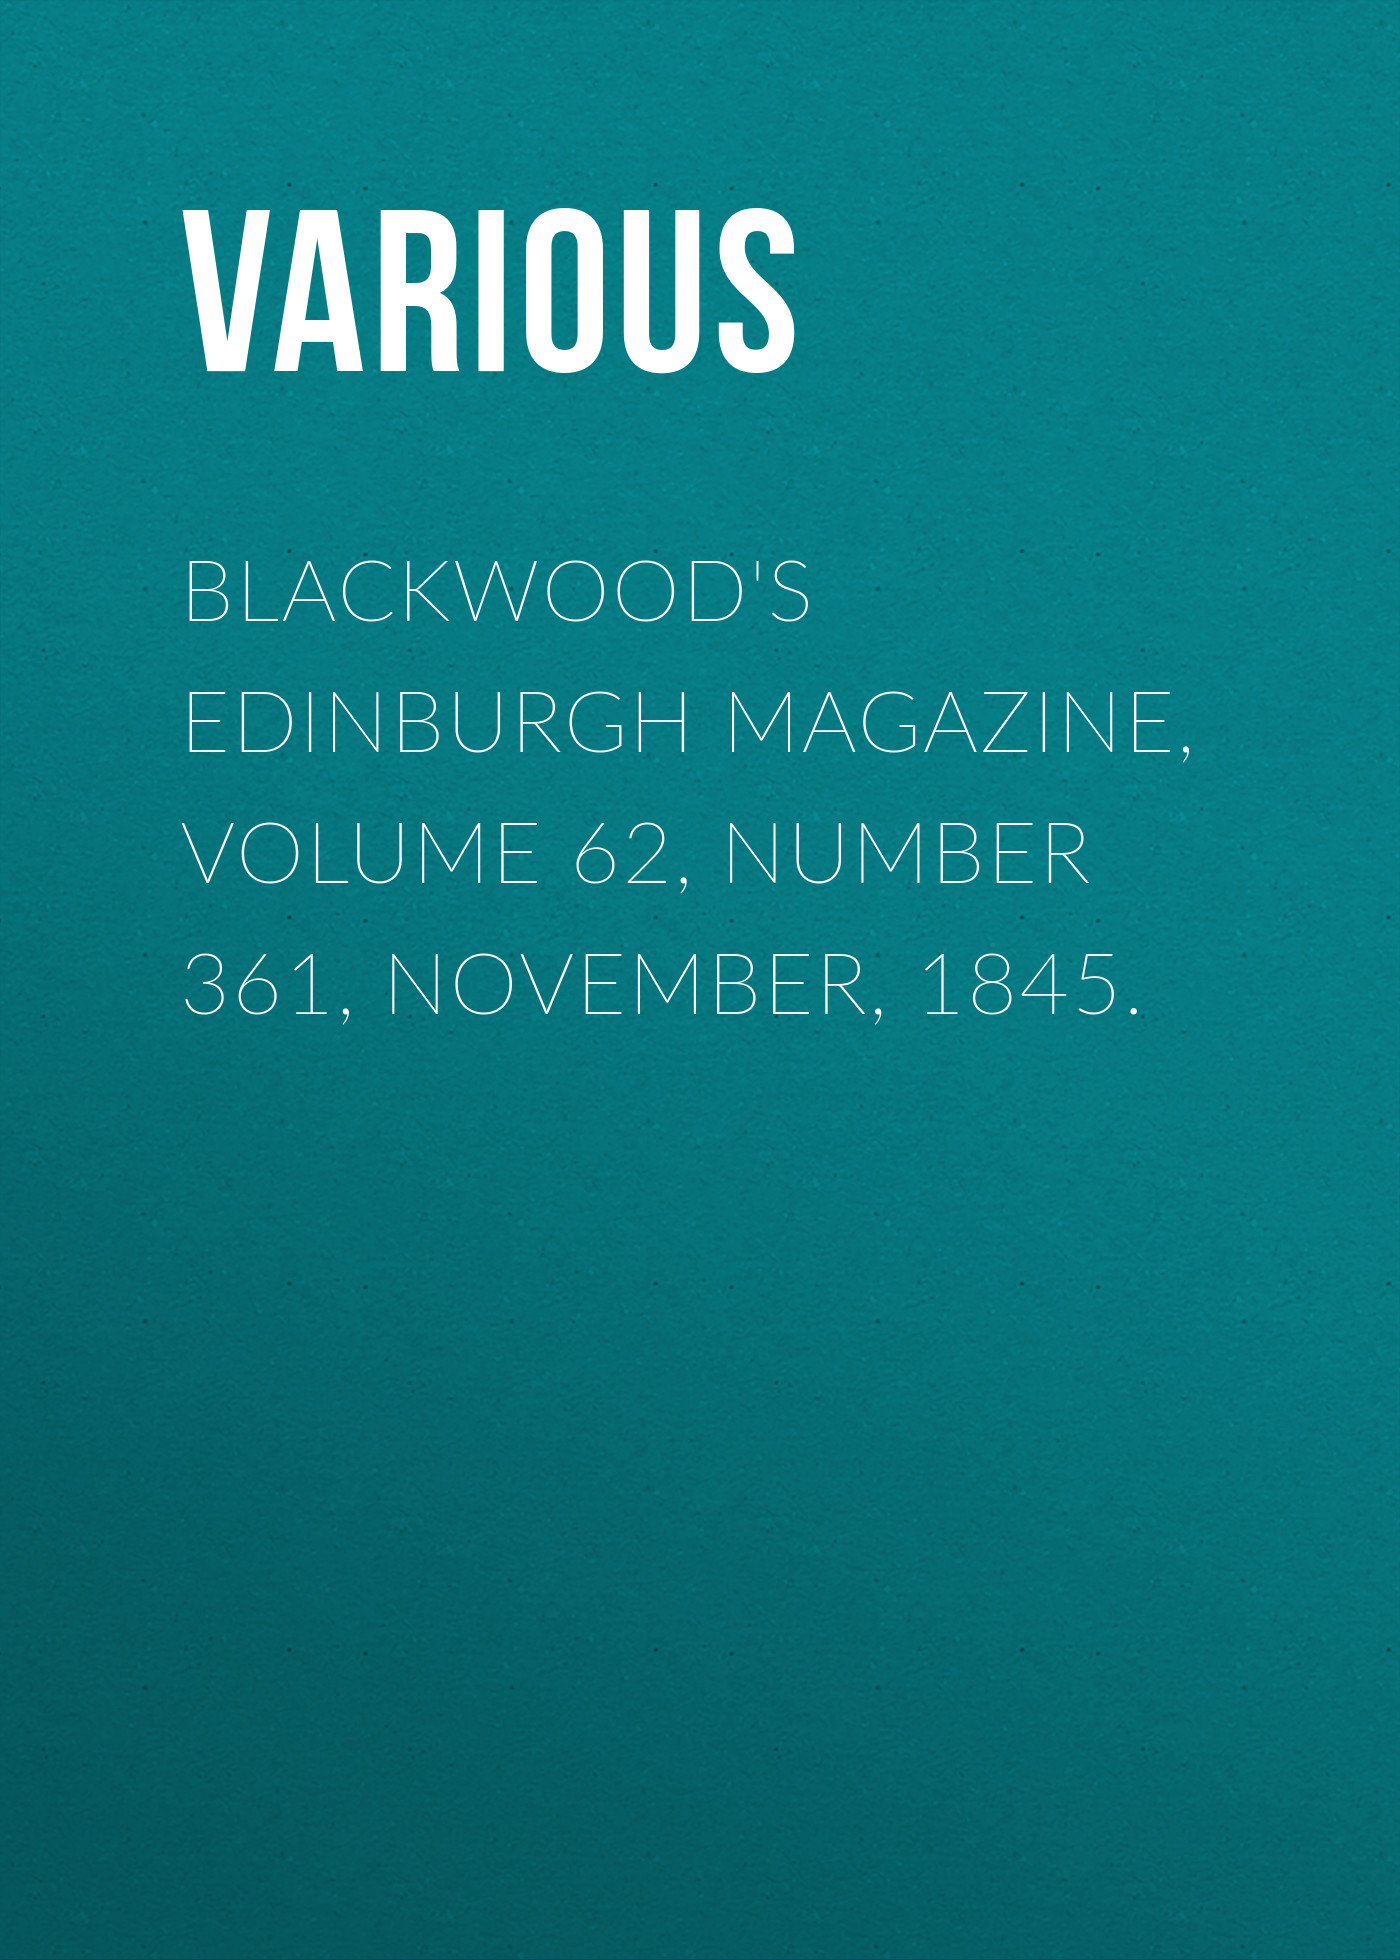 Книга Blackwood's Edinburgh Magazine, Volume 62, Number 361, November, 1845. из серии , созданная  Various, может относится к жанру Журналы, Зарубежная образовательная литература, Книги о Путешествиях. Стоимость электронной книги Blackwood's Edinburgh Magazine, Volume 62, Number 361, November, 1845. с идентификатором 25571031 составляет 0 руб.